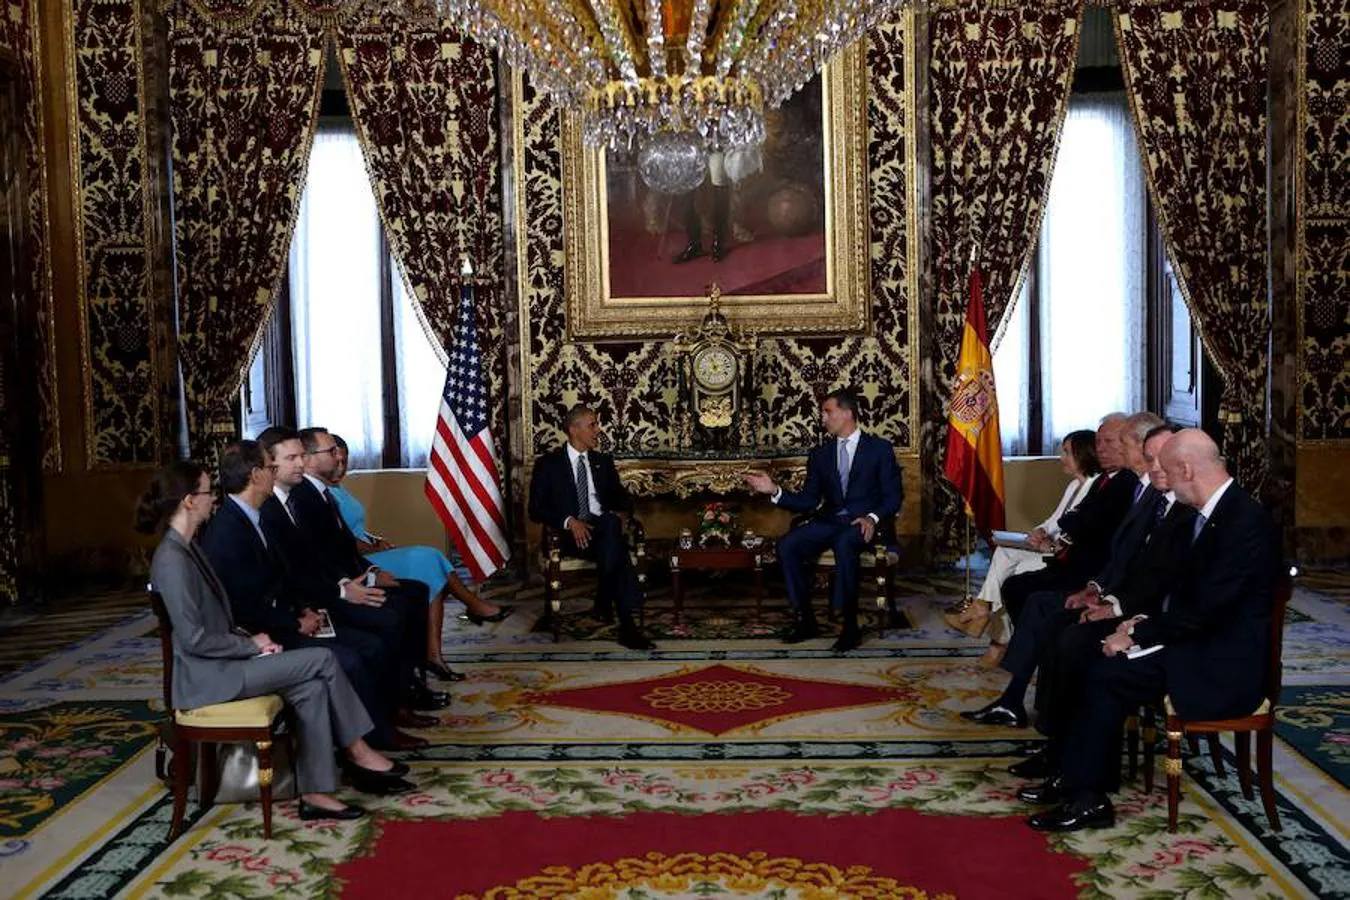 Audiencia de S.M. El rey Felipe VI al presidente de los Estados Unidos Barack Obama en el Palacio Real